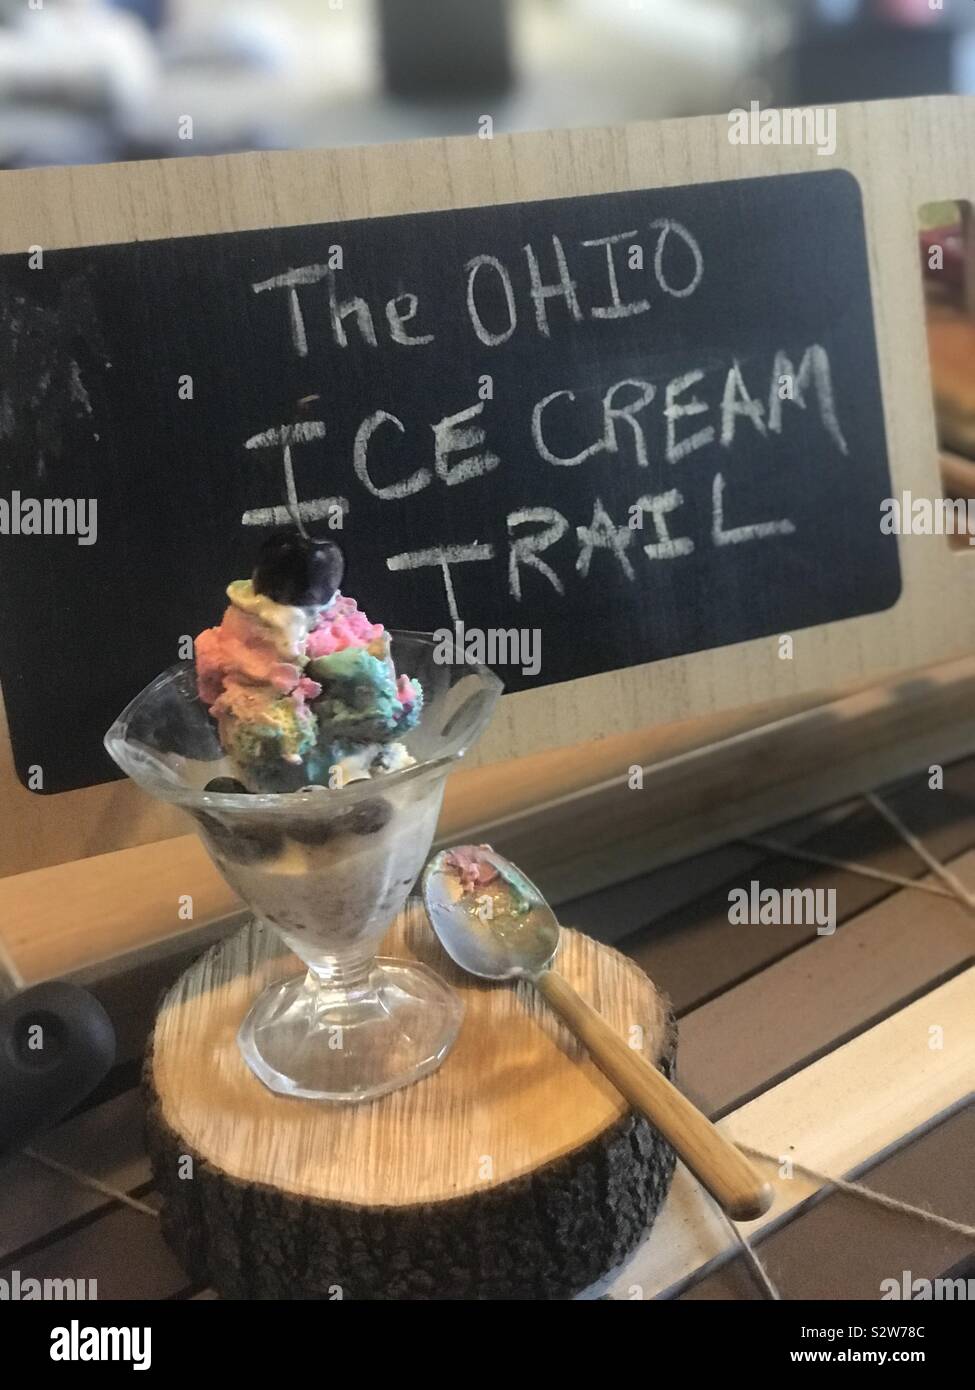 Le sentier de la crème glacée de l'Ohio écrit sur un tableau noir en bois avec une coupe de glaces affichée à coté). Banque D'Images